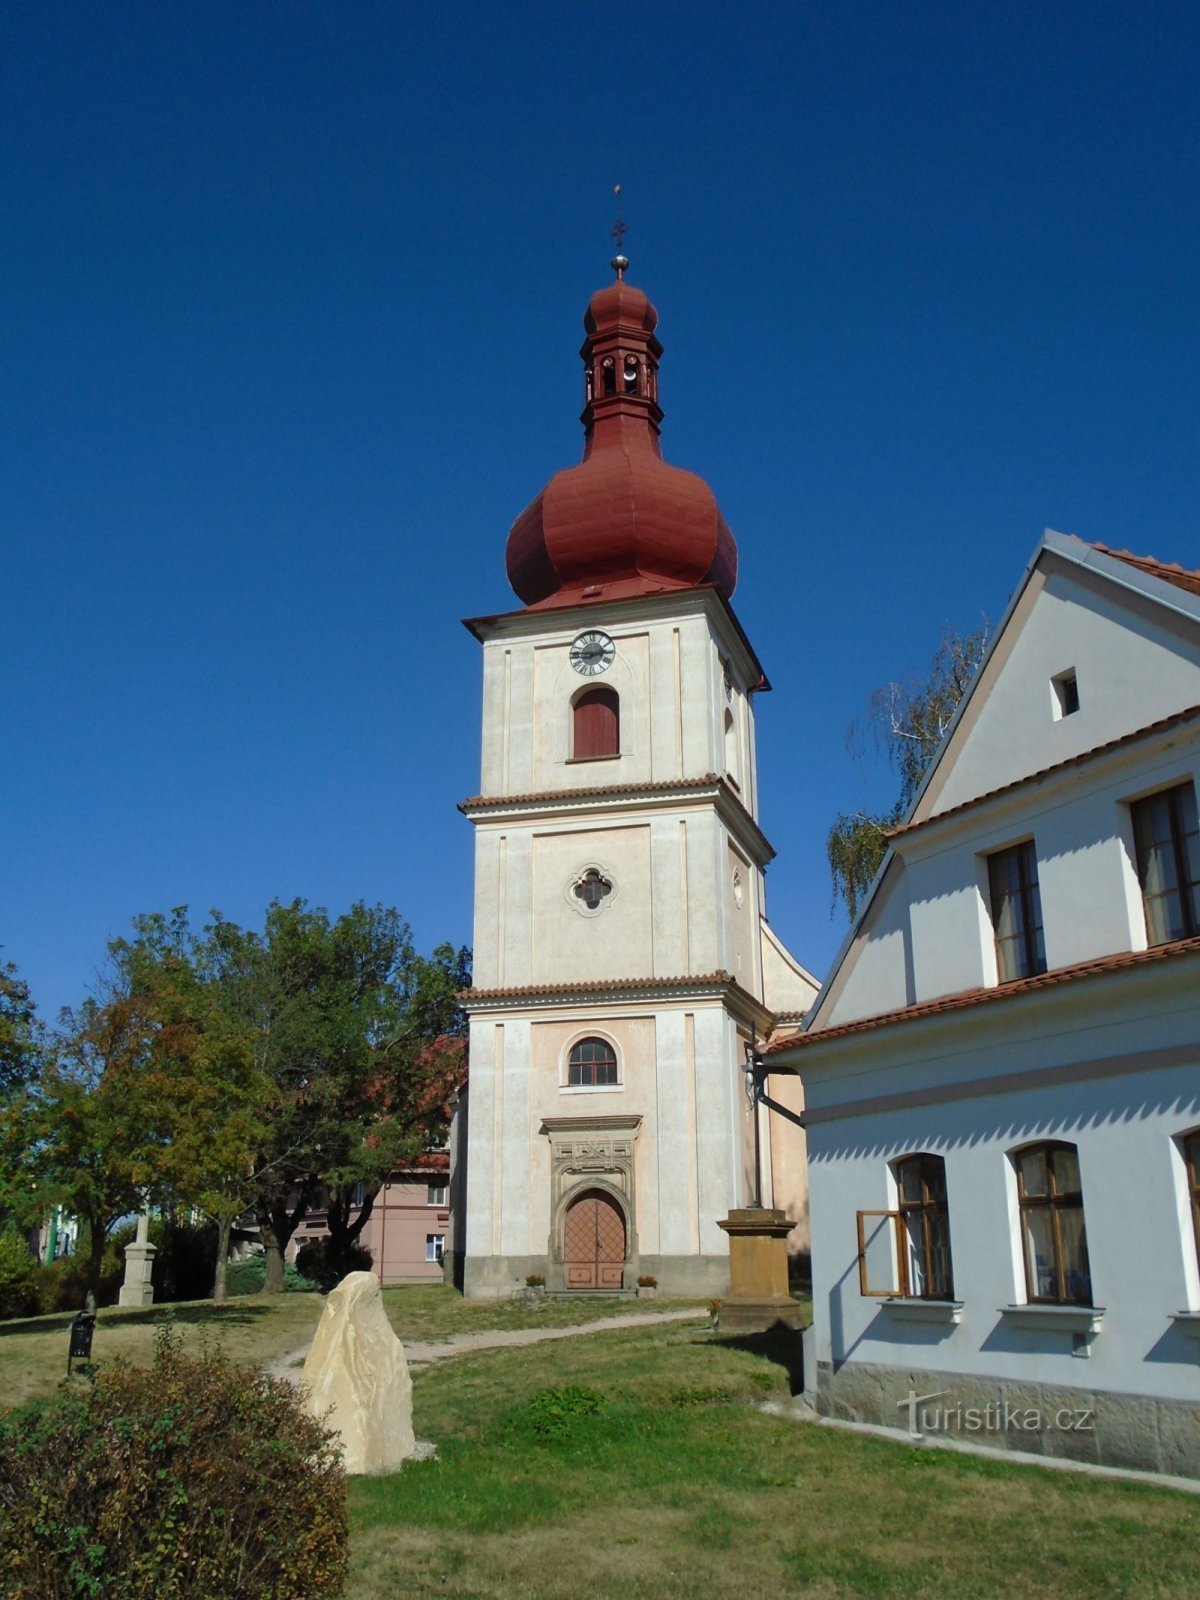 Igreja de St. Jakub (Jaroměř, 12.9.2018/XNUMX/XNUMX)